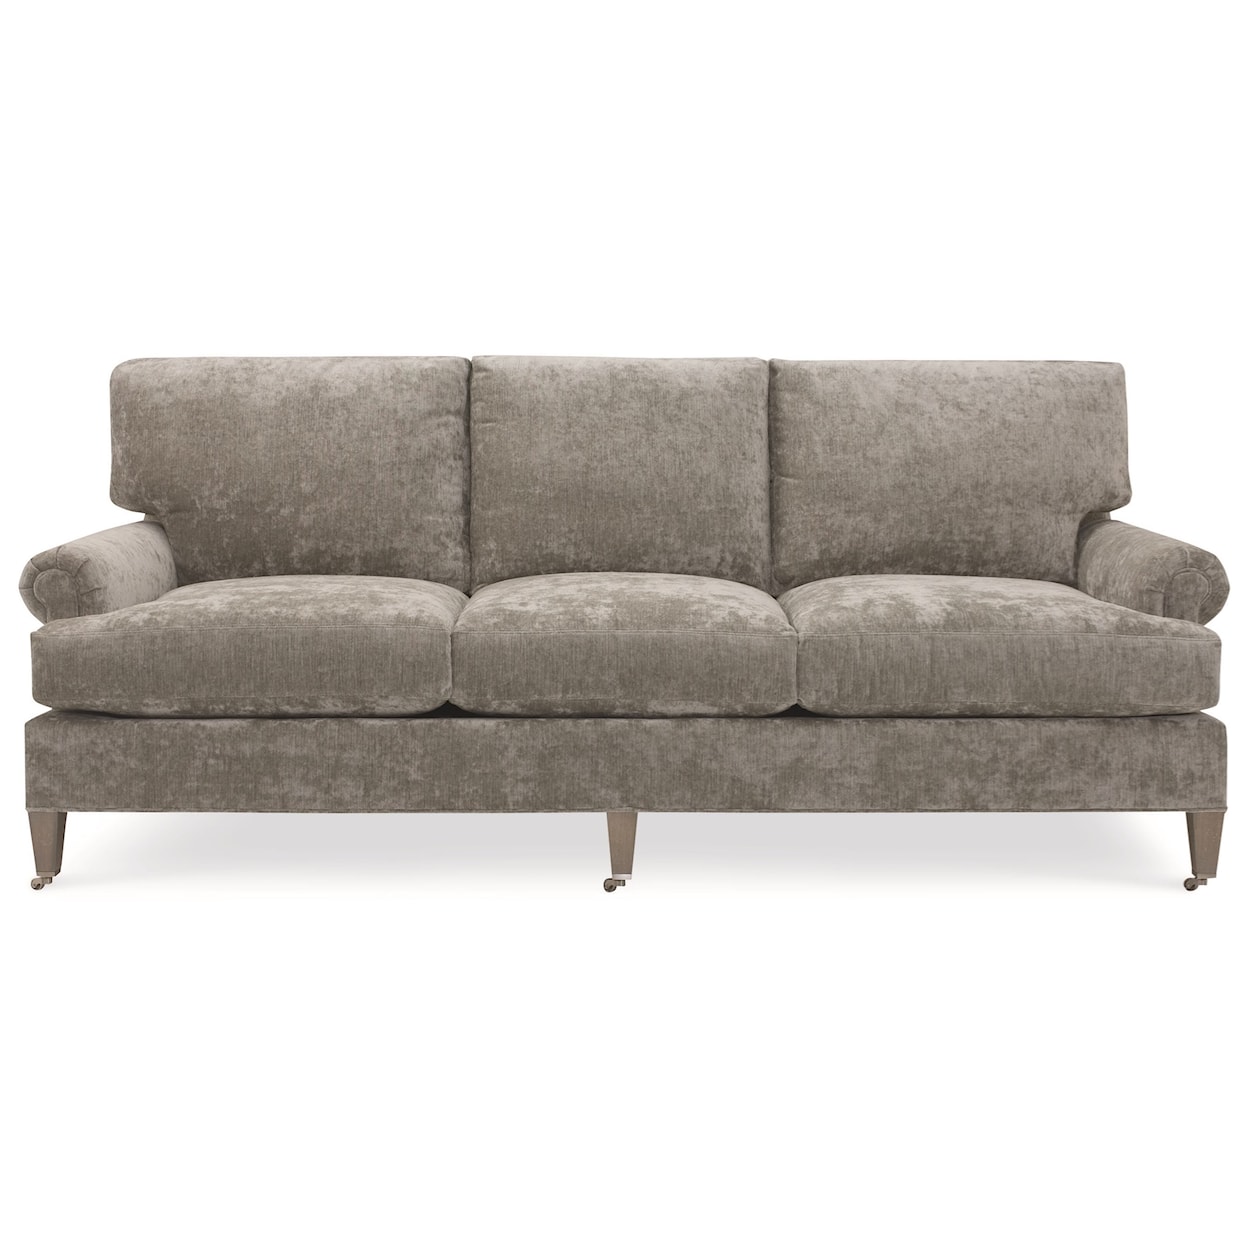 C.R. Laine Custom Design 8800 Series Customizable Sofa